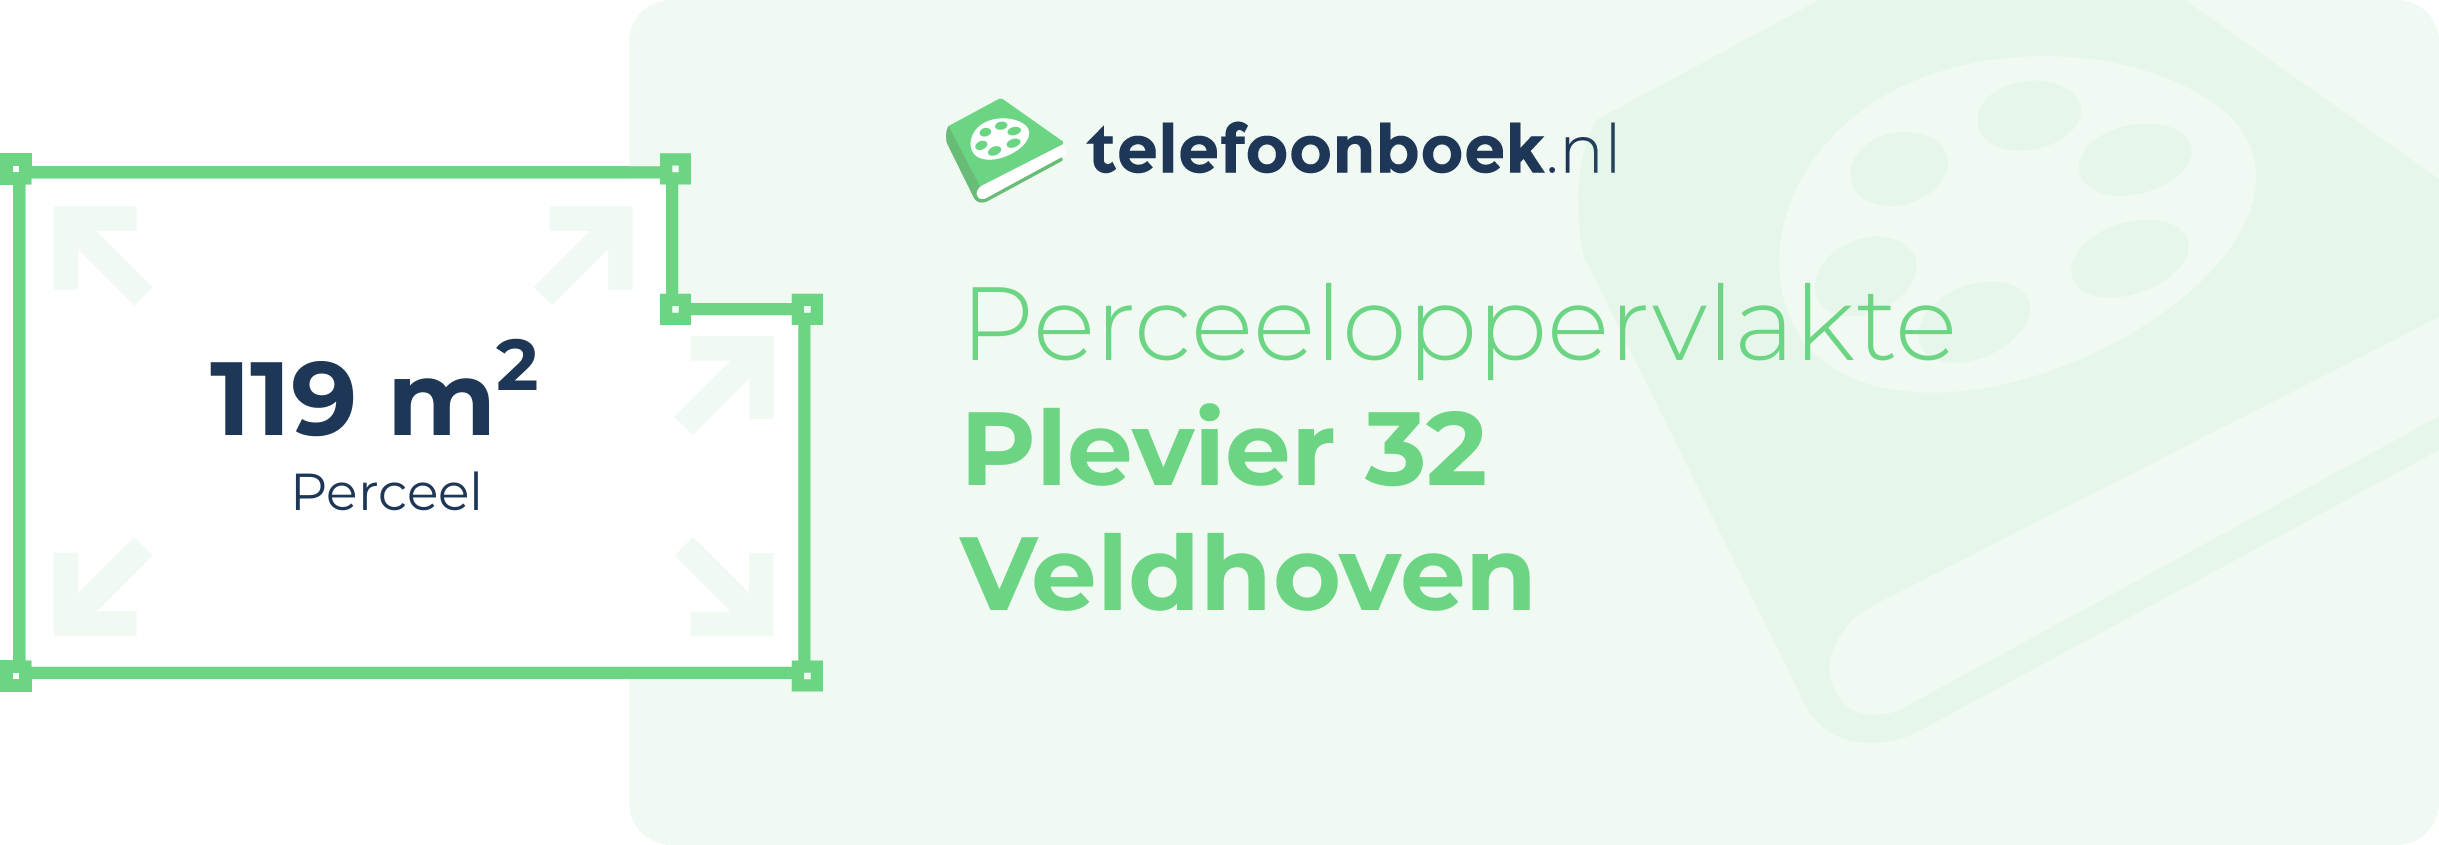 Perceeloppervlakte Plevier 32 Veldhoven